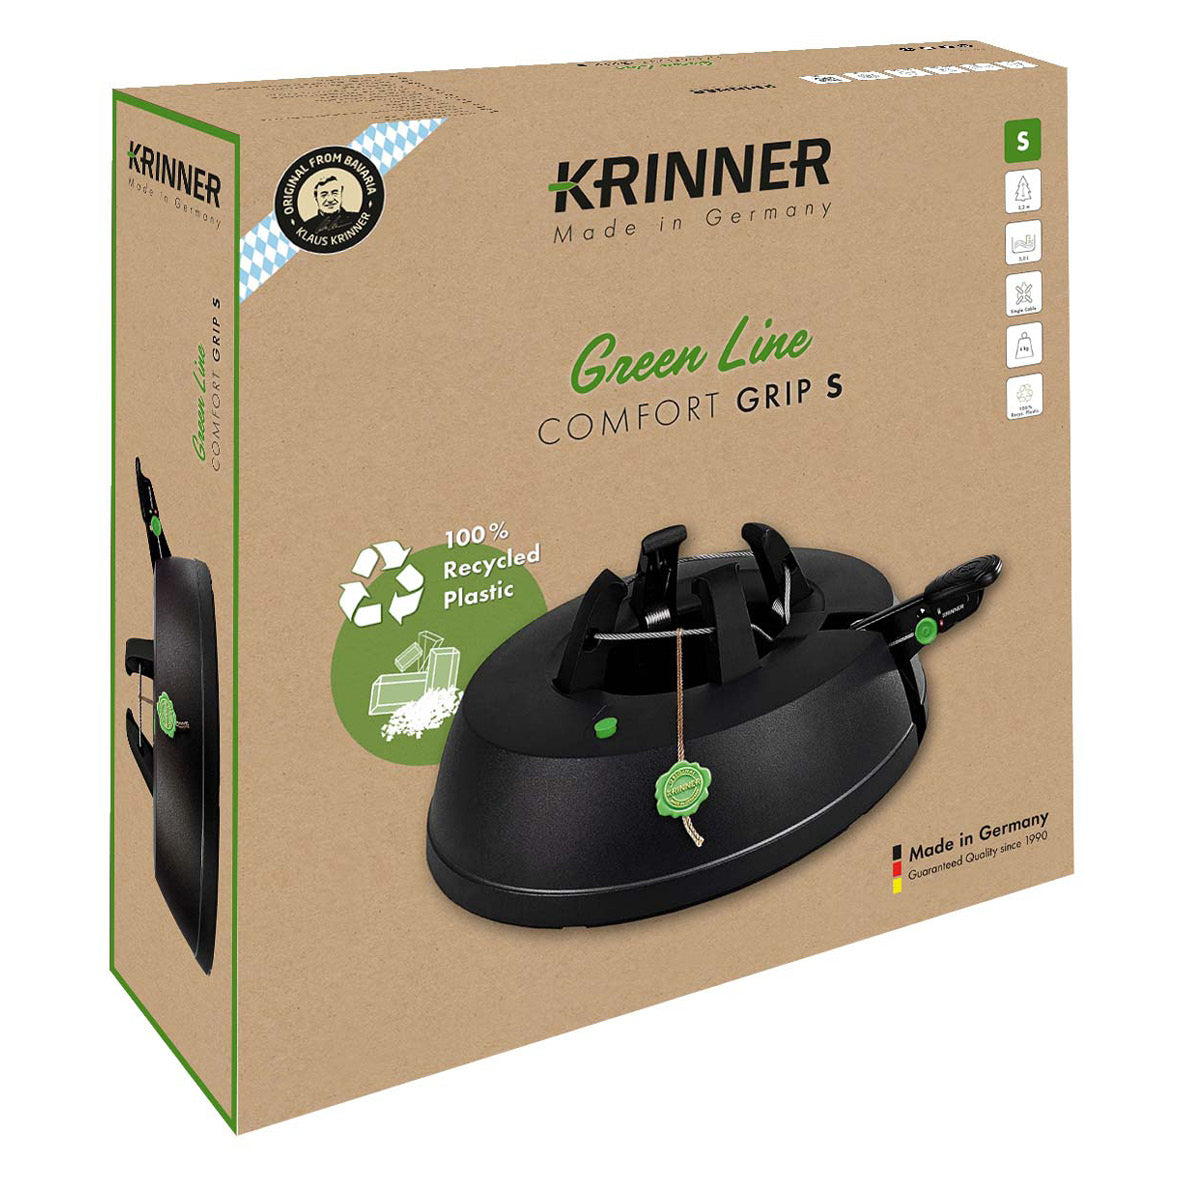 KRINNER Green Line Comfort Grip S